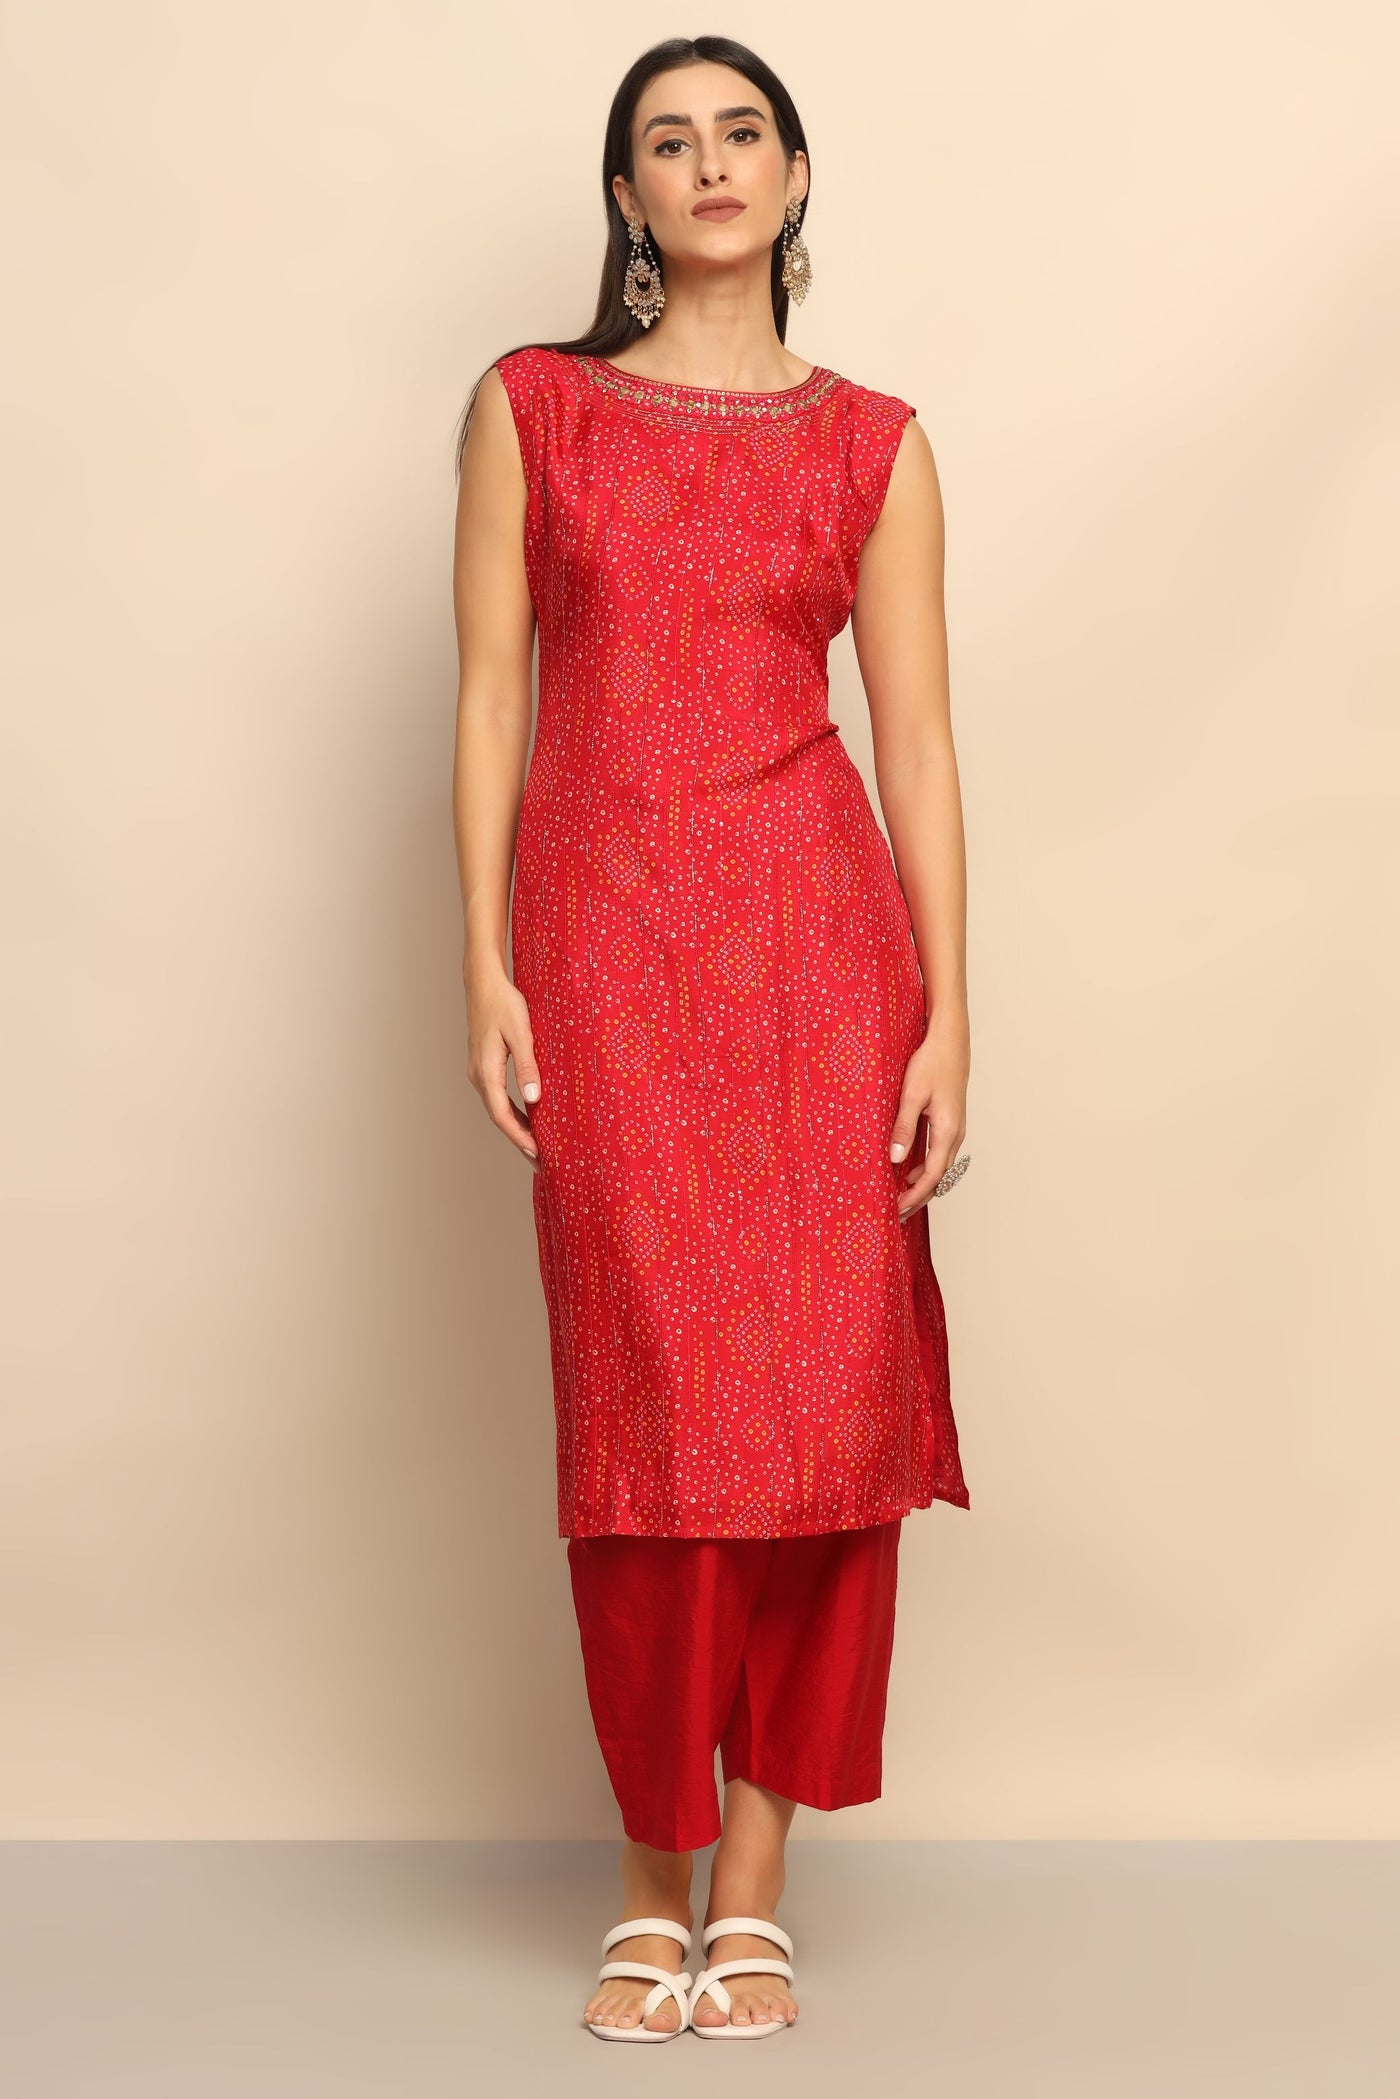 Dazzling Red Sequin Mirror Suit - Unleash Your Inner Diva